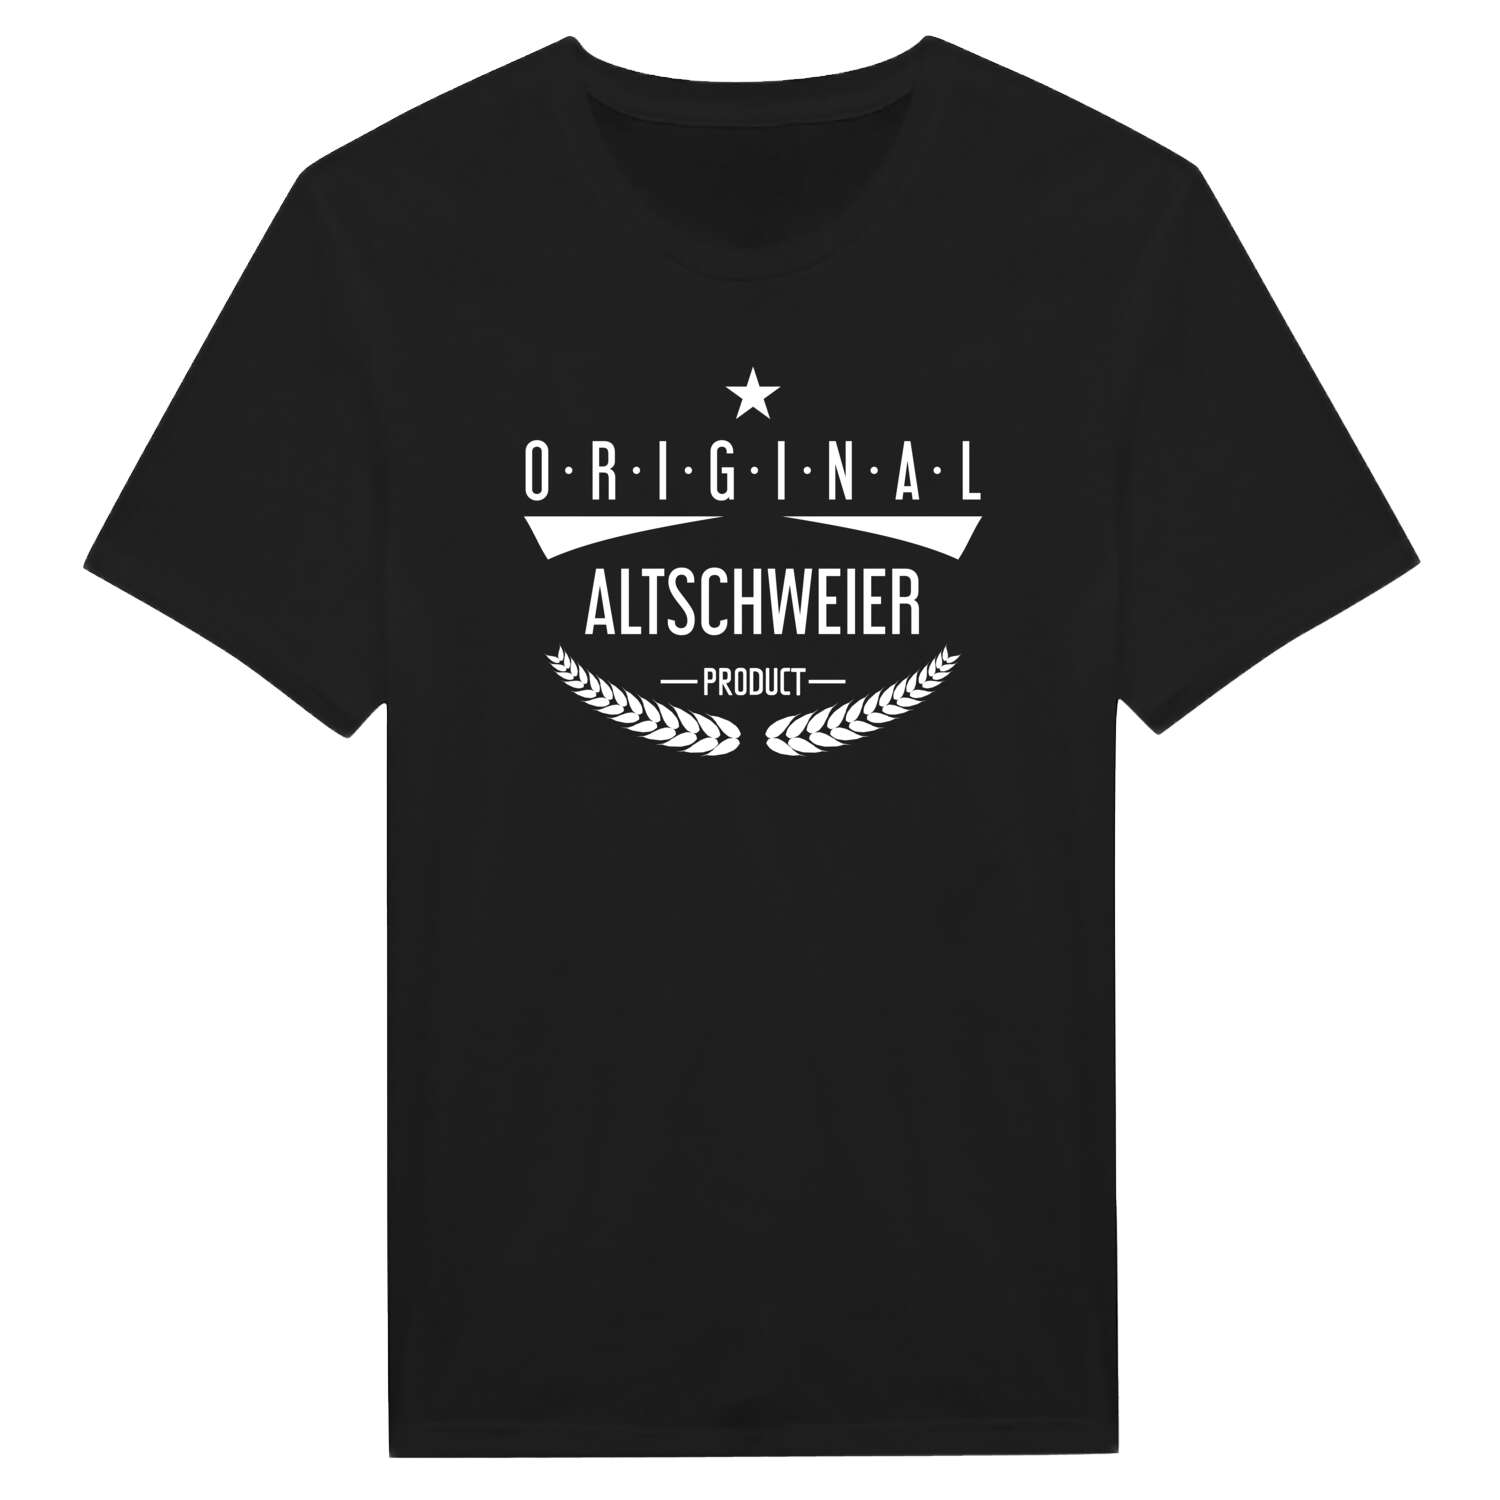 Altschweier T-Shirt »Original Product«